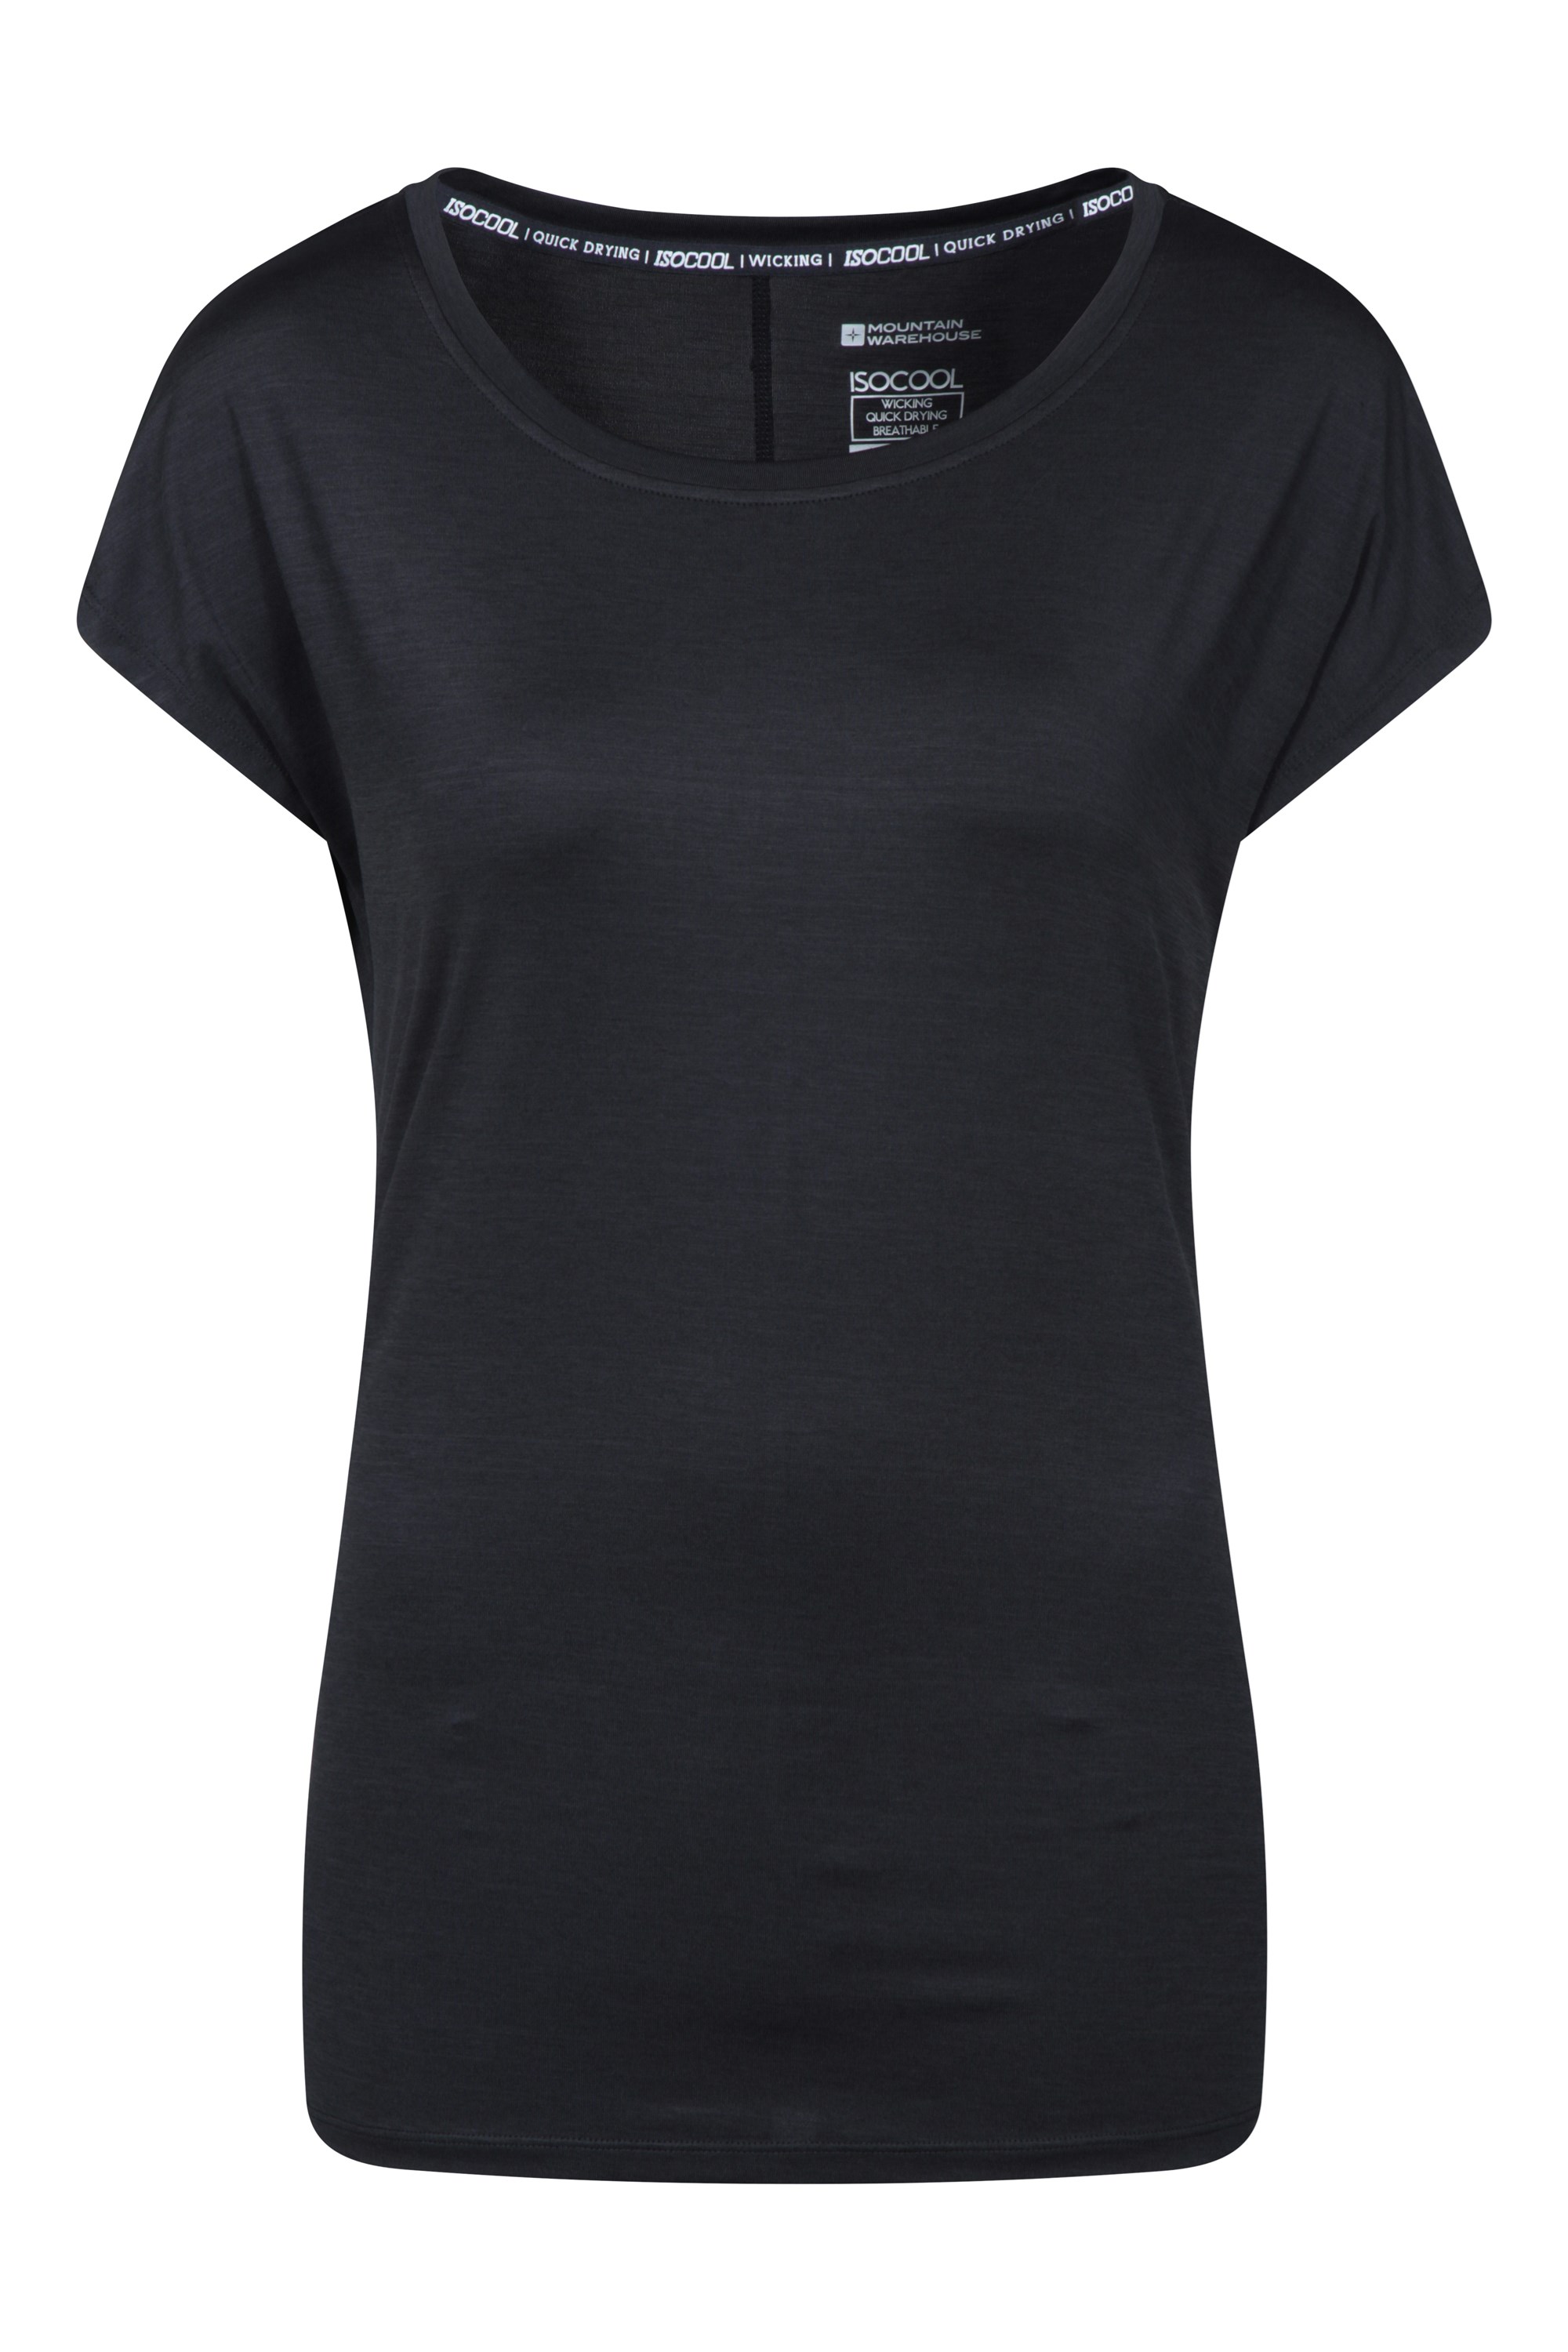 T-Shirt Panna UV Femme - Multipack - Noir